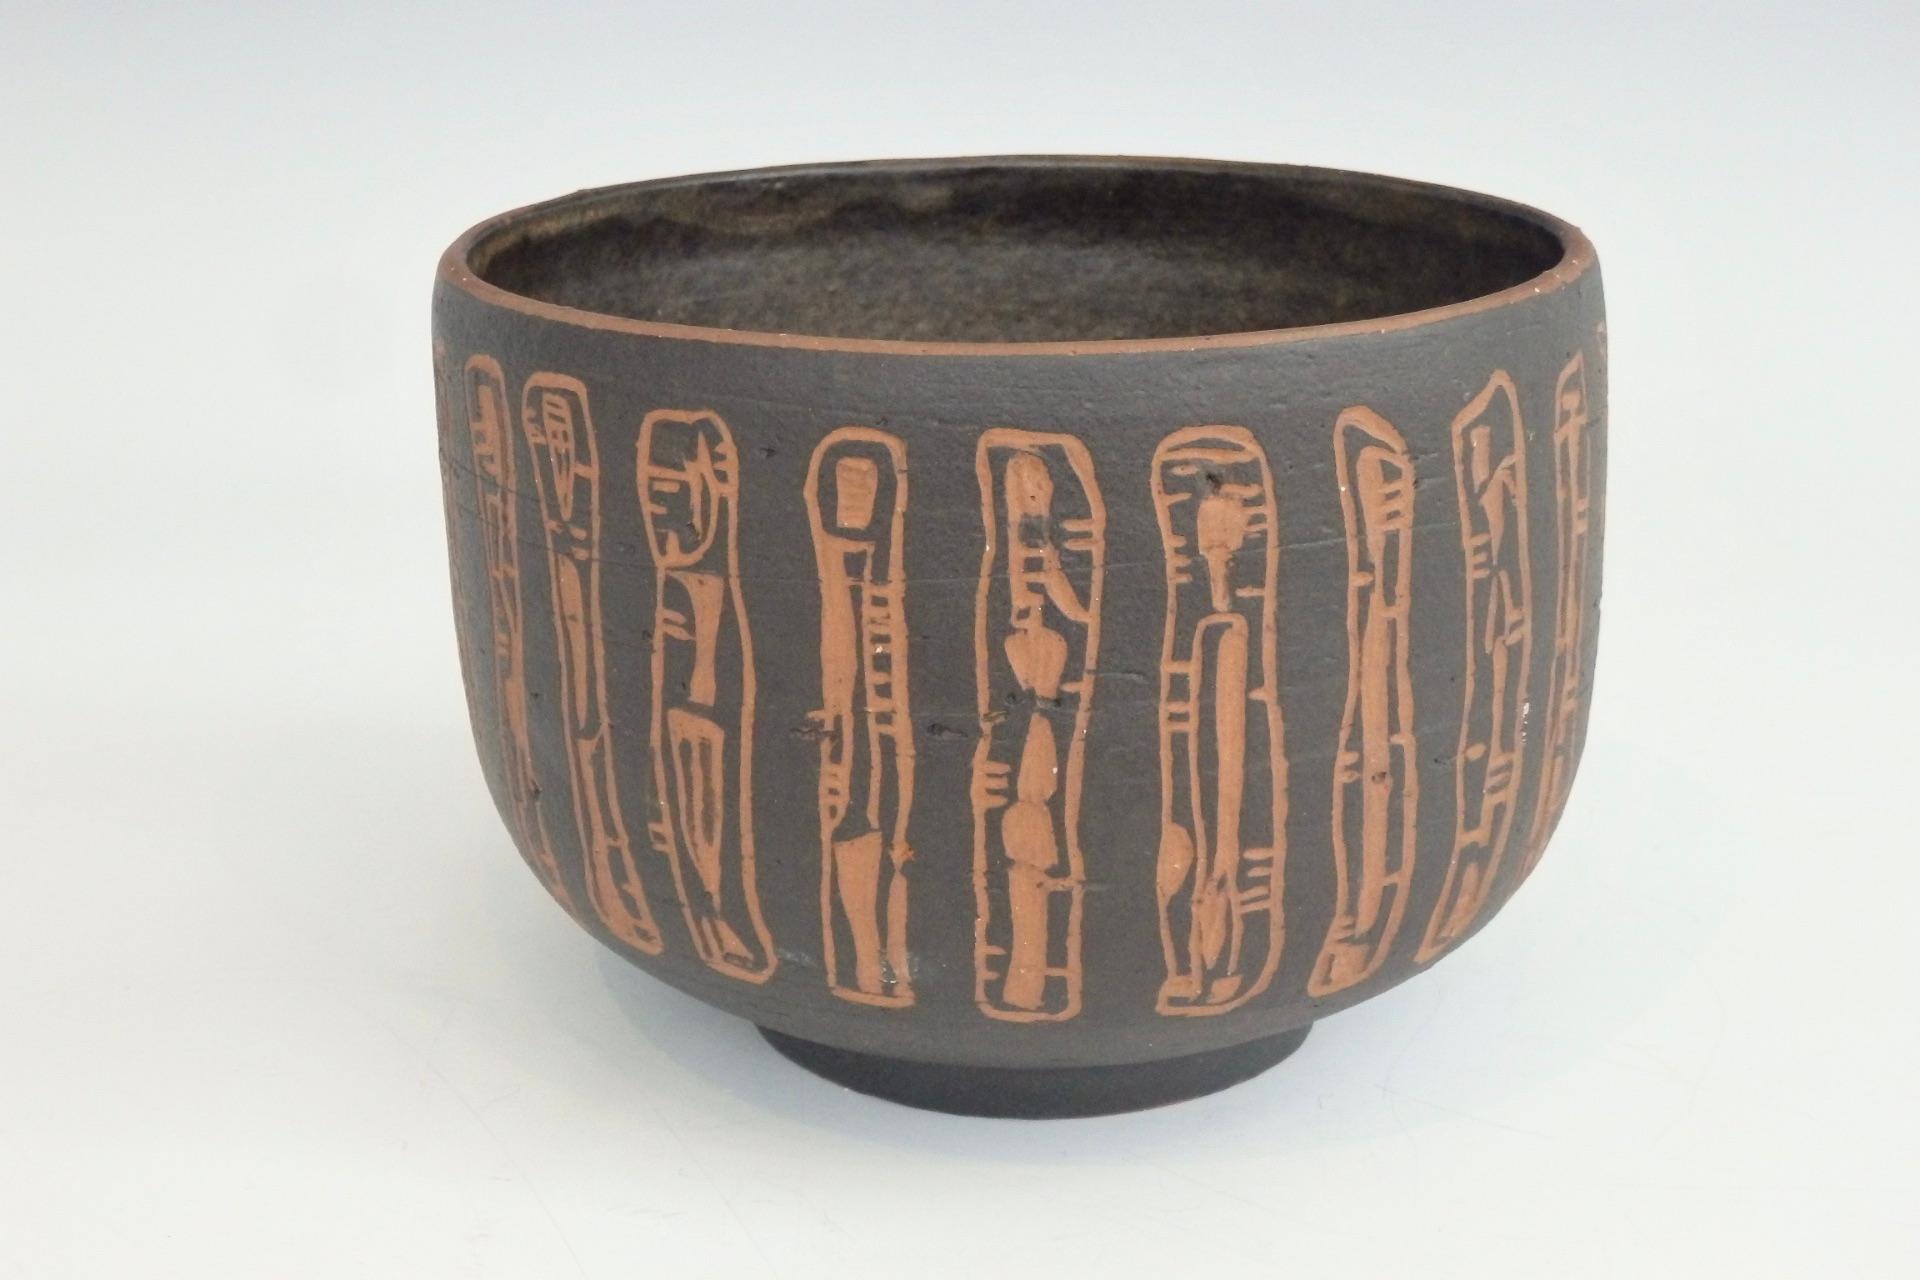 Rozsika Blackstone New York und Arizona, ca. 1920-62 Keramikgefäß.
Tiefe Schale mit dunkelbrauner Glasur, Sgraffito-Dekor mit abstraktem, vertikalem Muster, das den roten Scherben durchscheinen lässt, erhöht auf rundem Fuß, eingeritzte Signatur